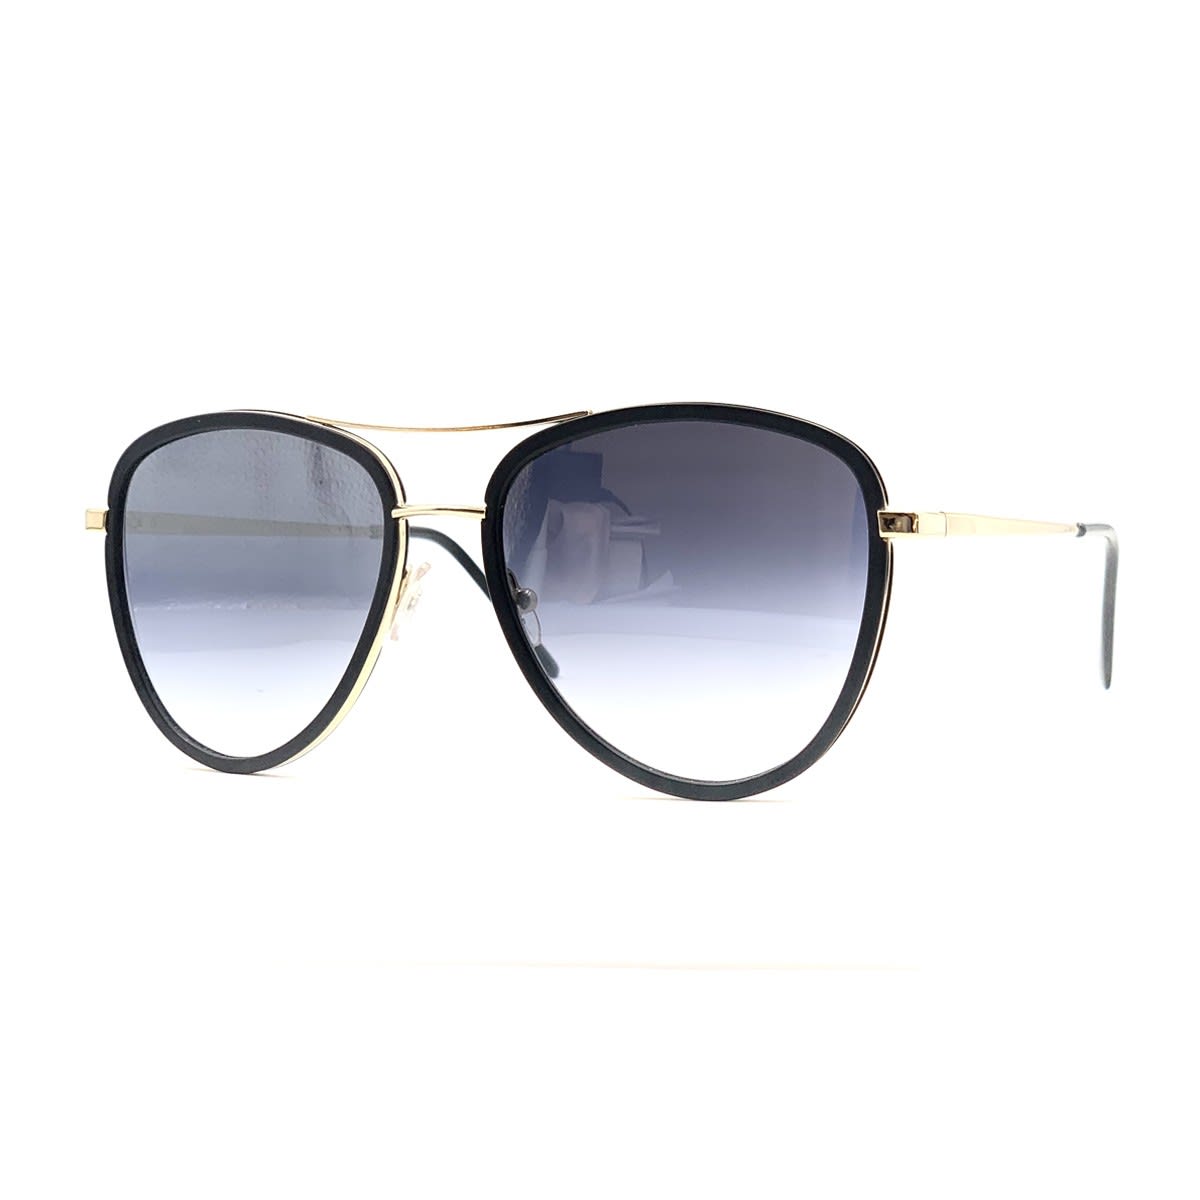 Saint Tropez Sunglasses